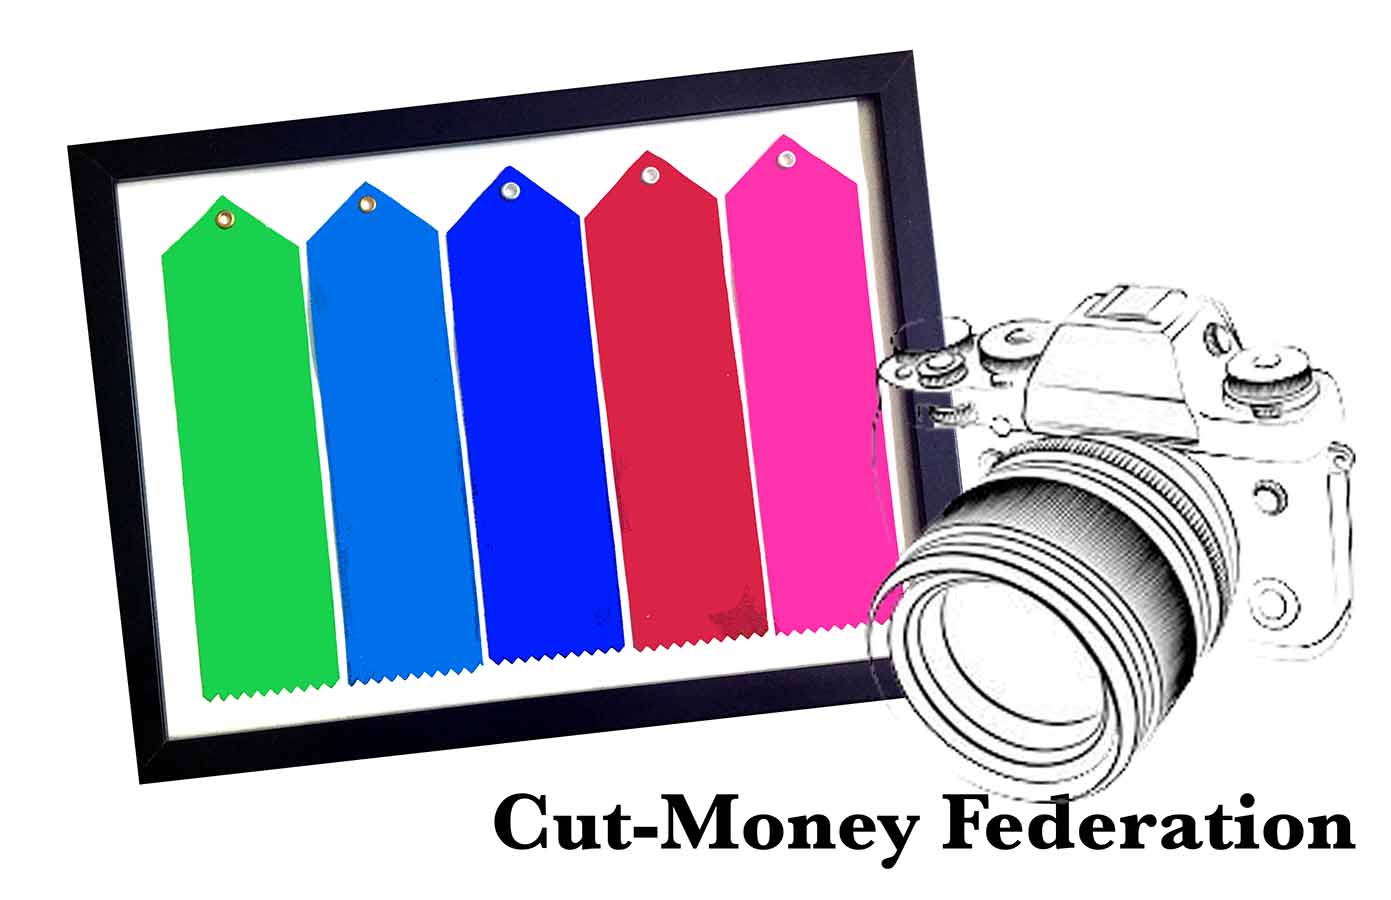 Cut-Money Federation